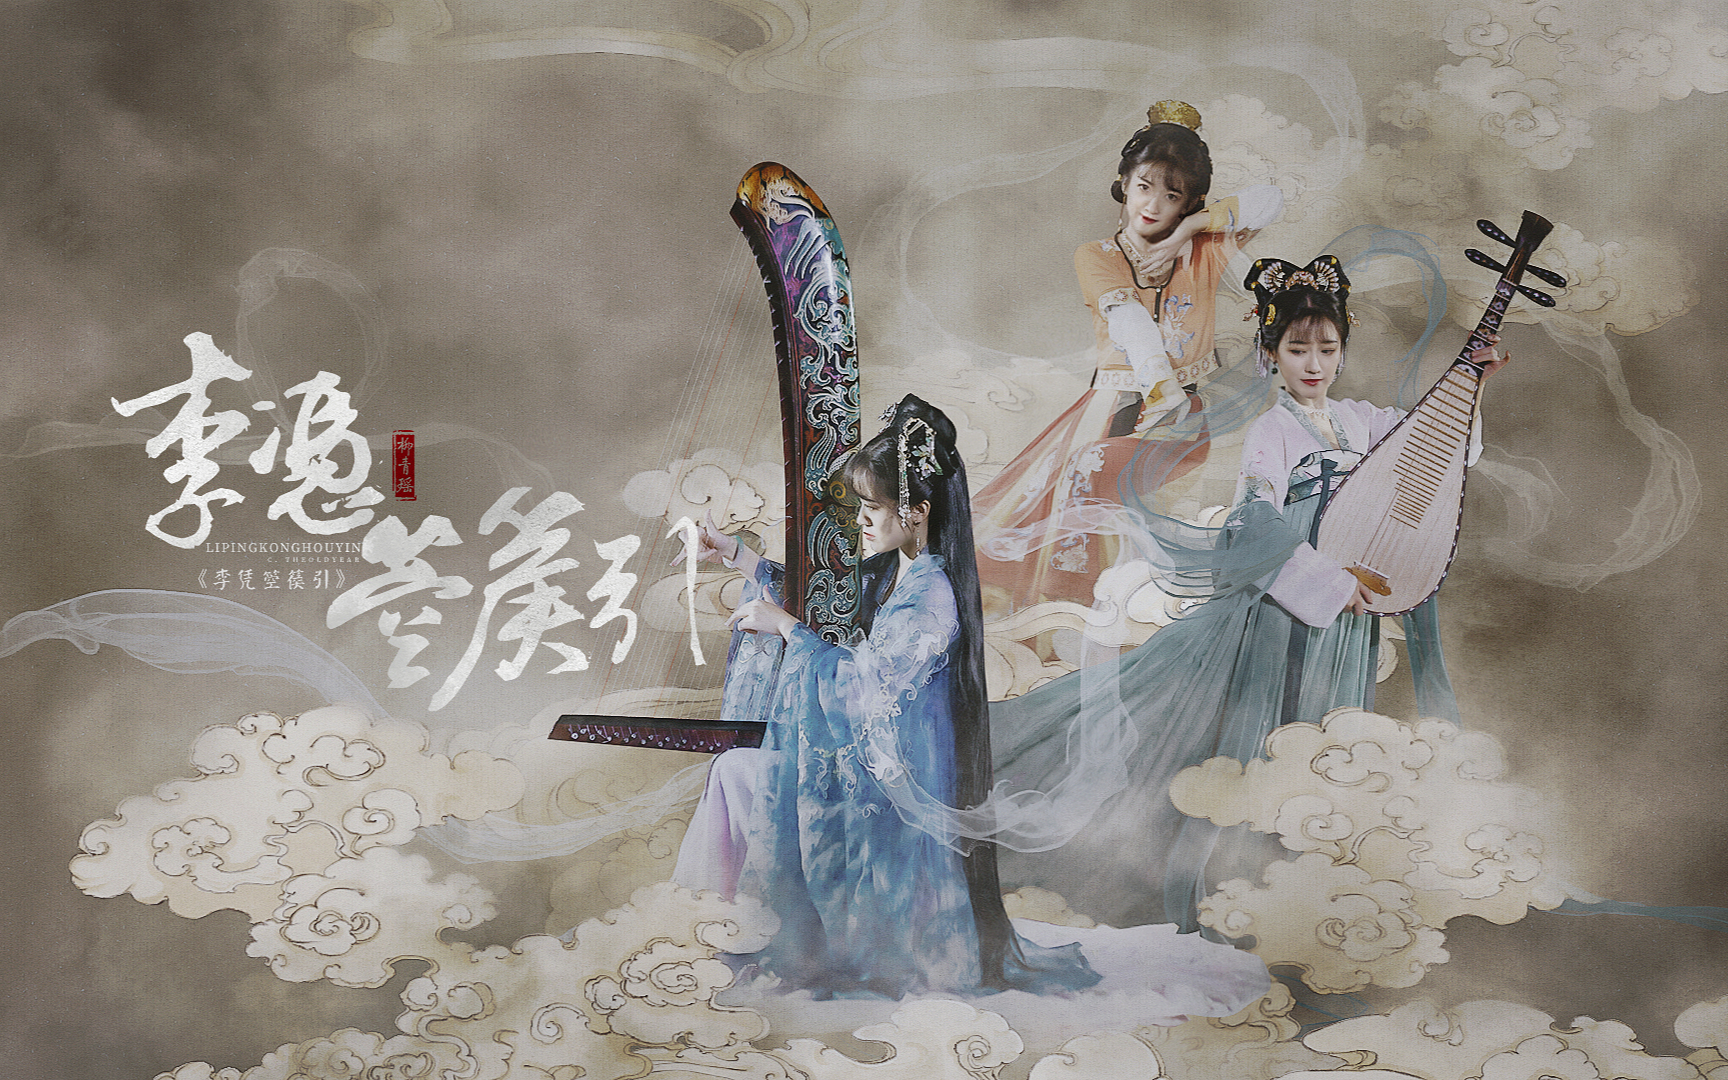 【青瑶×敦煌壁画箜篌】《李凭箜篌引》 认识中国人的乐器——箜篌